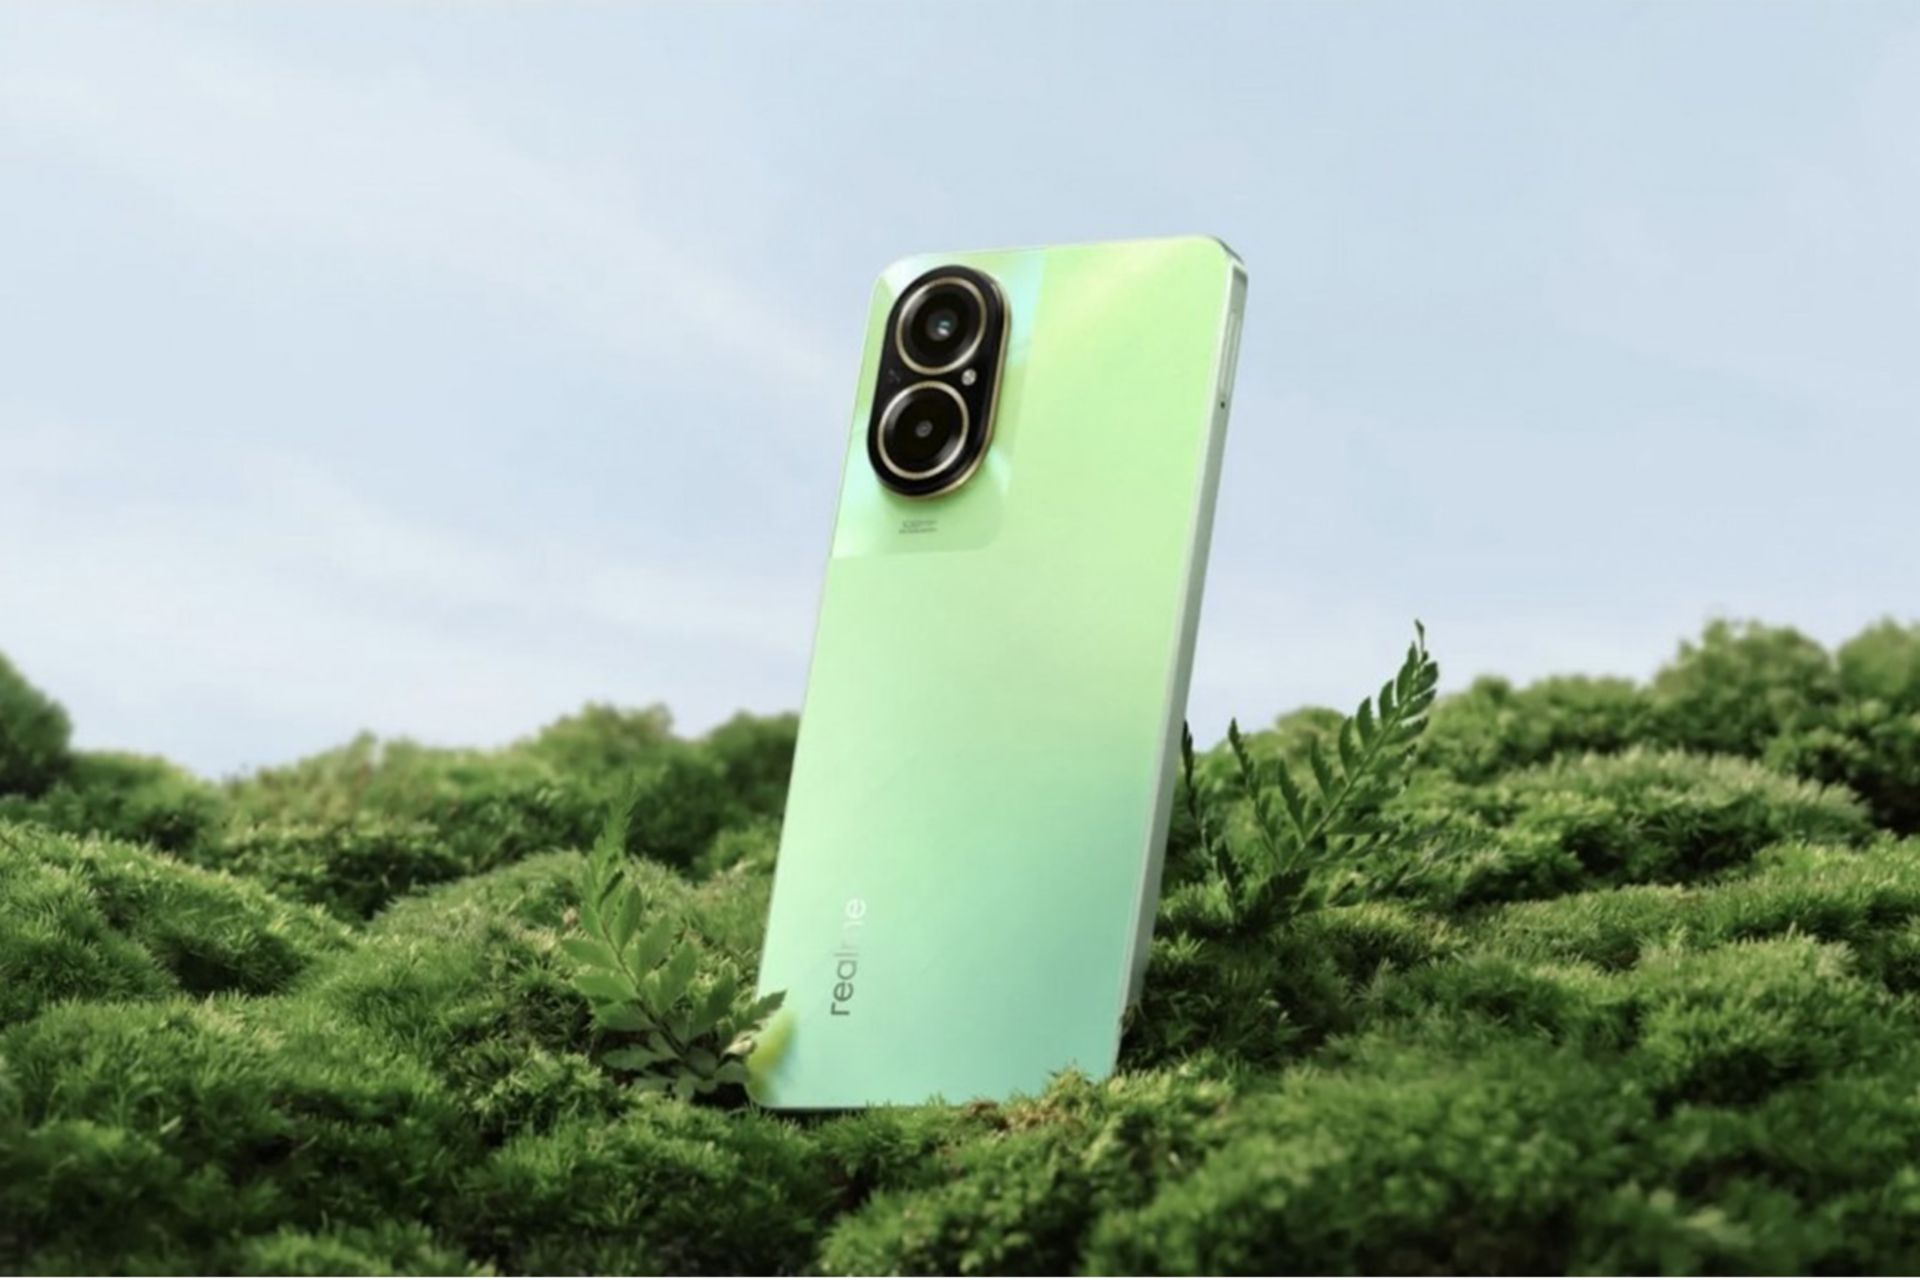 گوشی ریلمی c67 4g به رنگ سبز روشن در طبیعت